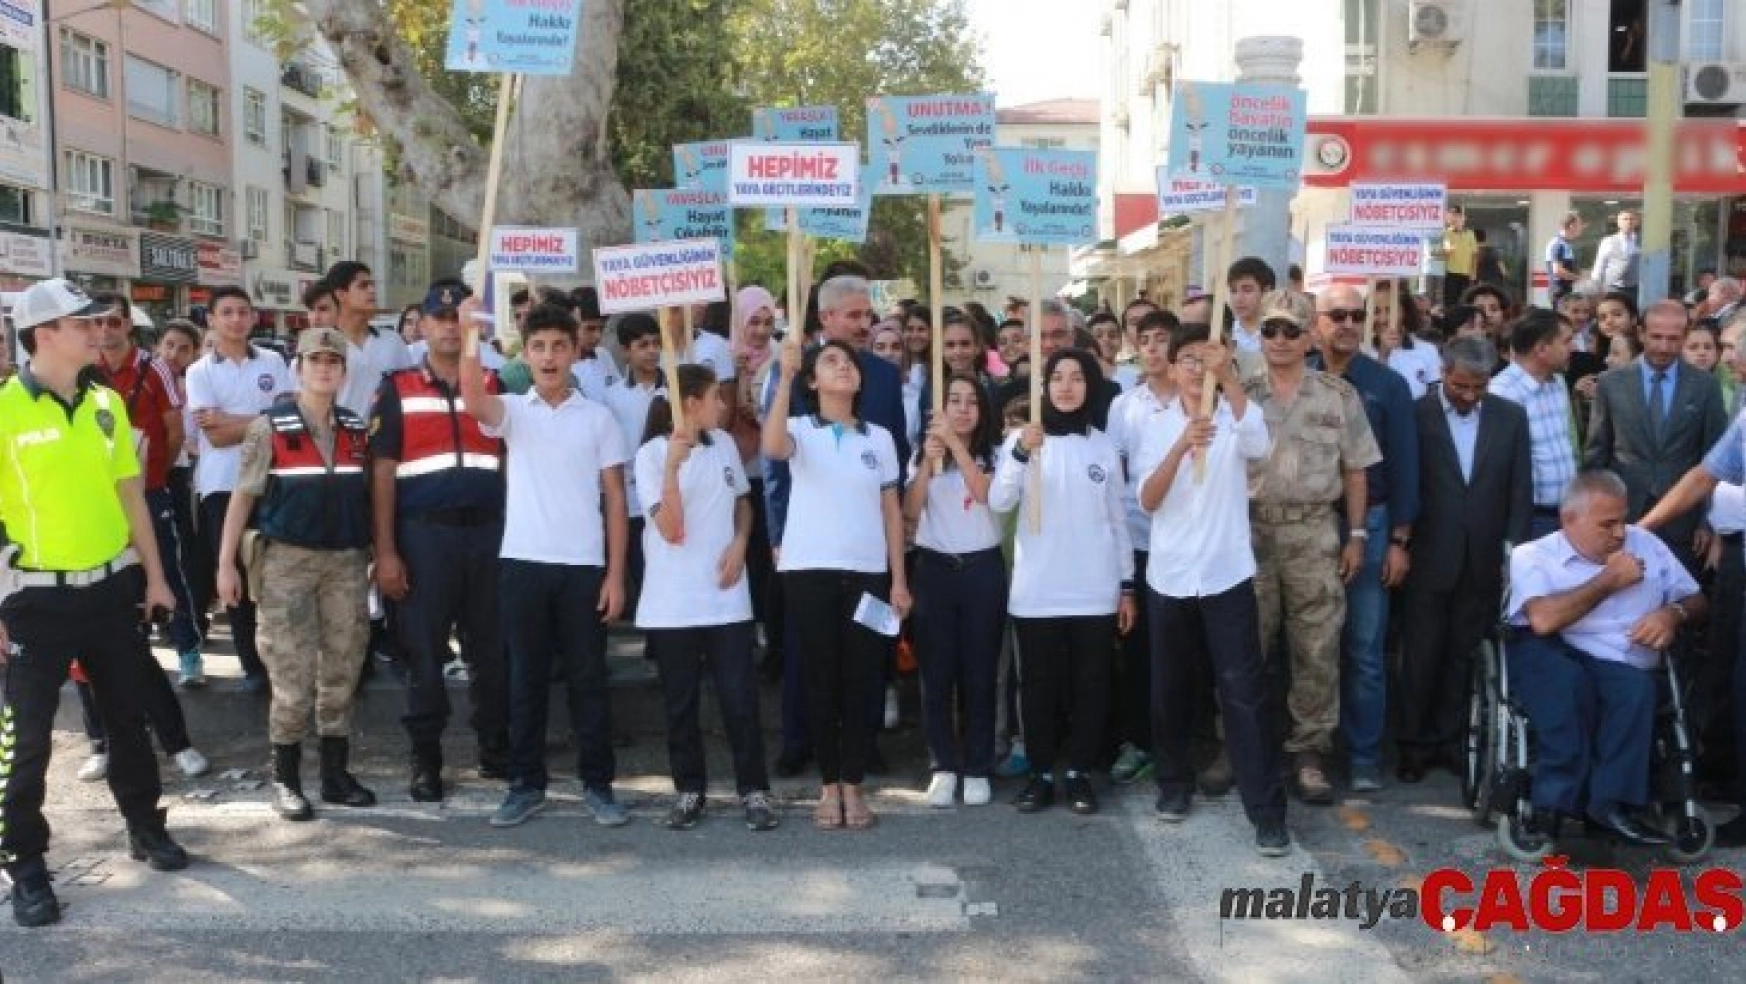 'Yaya güvenliğinin nöbetçisiyiz' kampanyası Adıyaman'da uygulandı